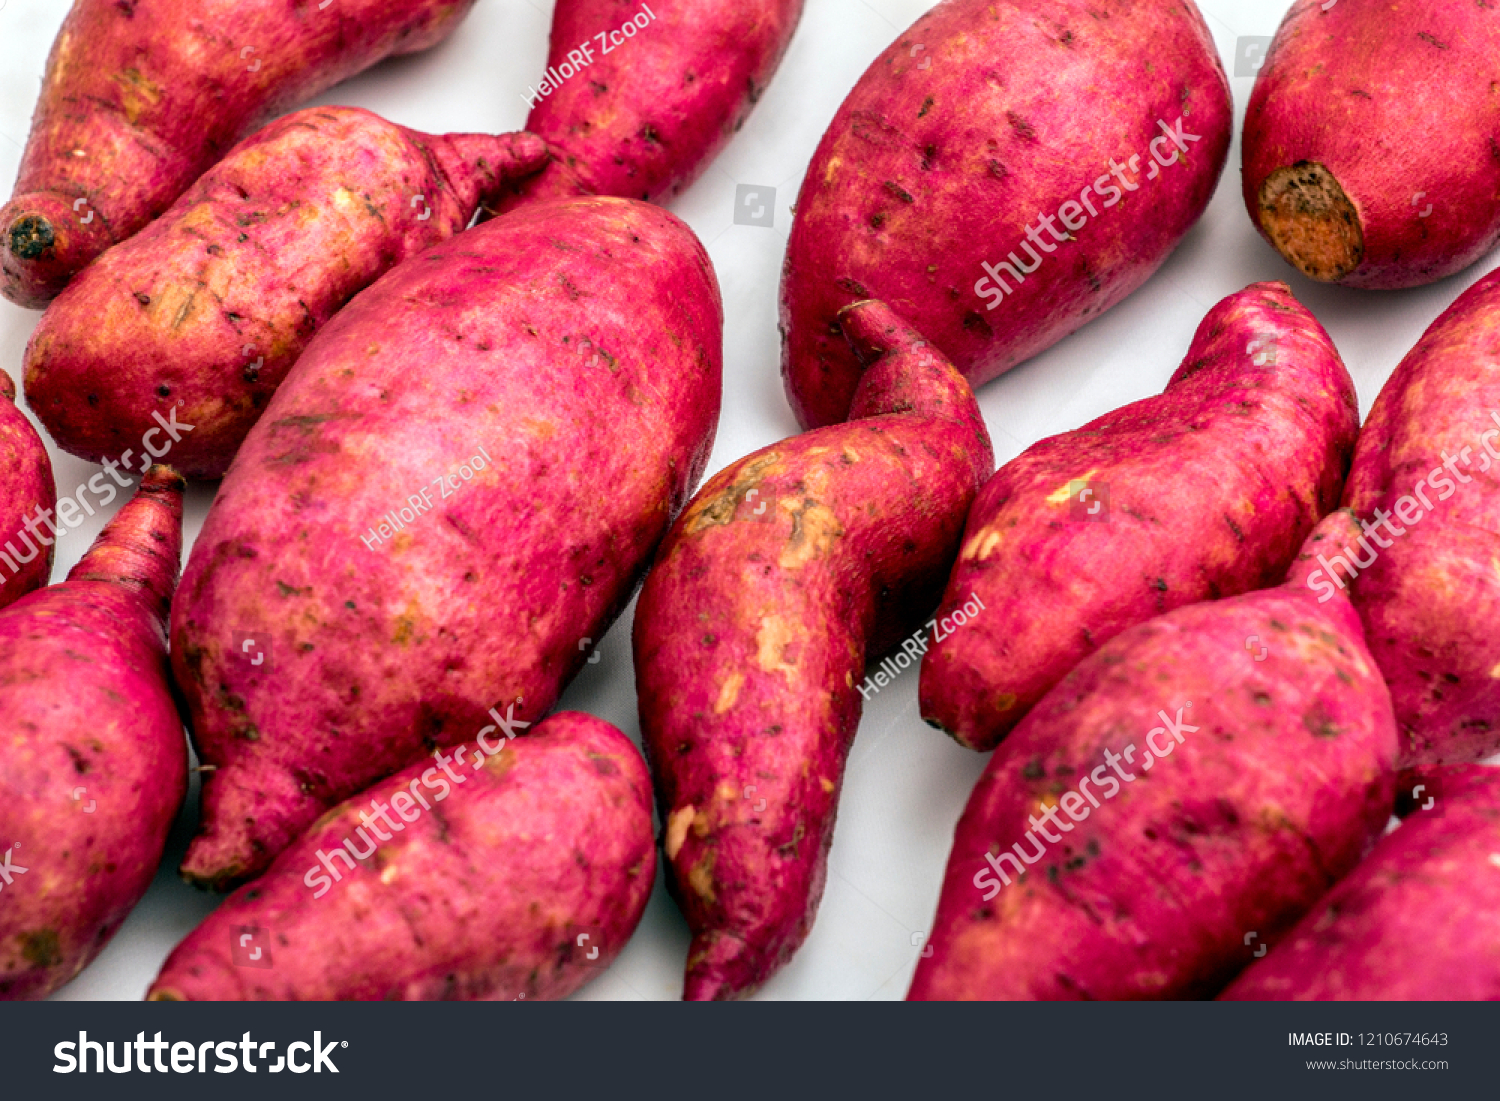 Sweet potato, sweet potato, sweet potato #1210674643